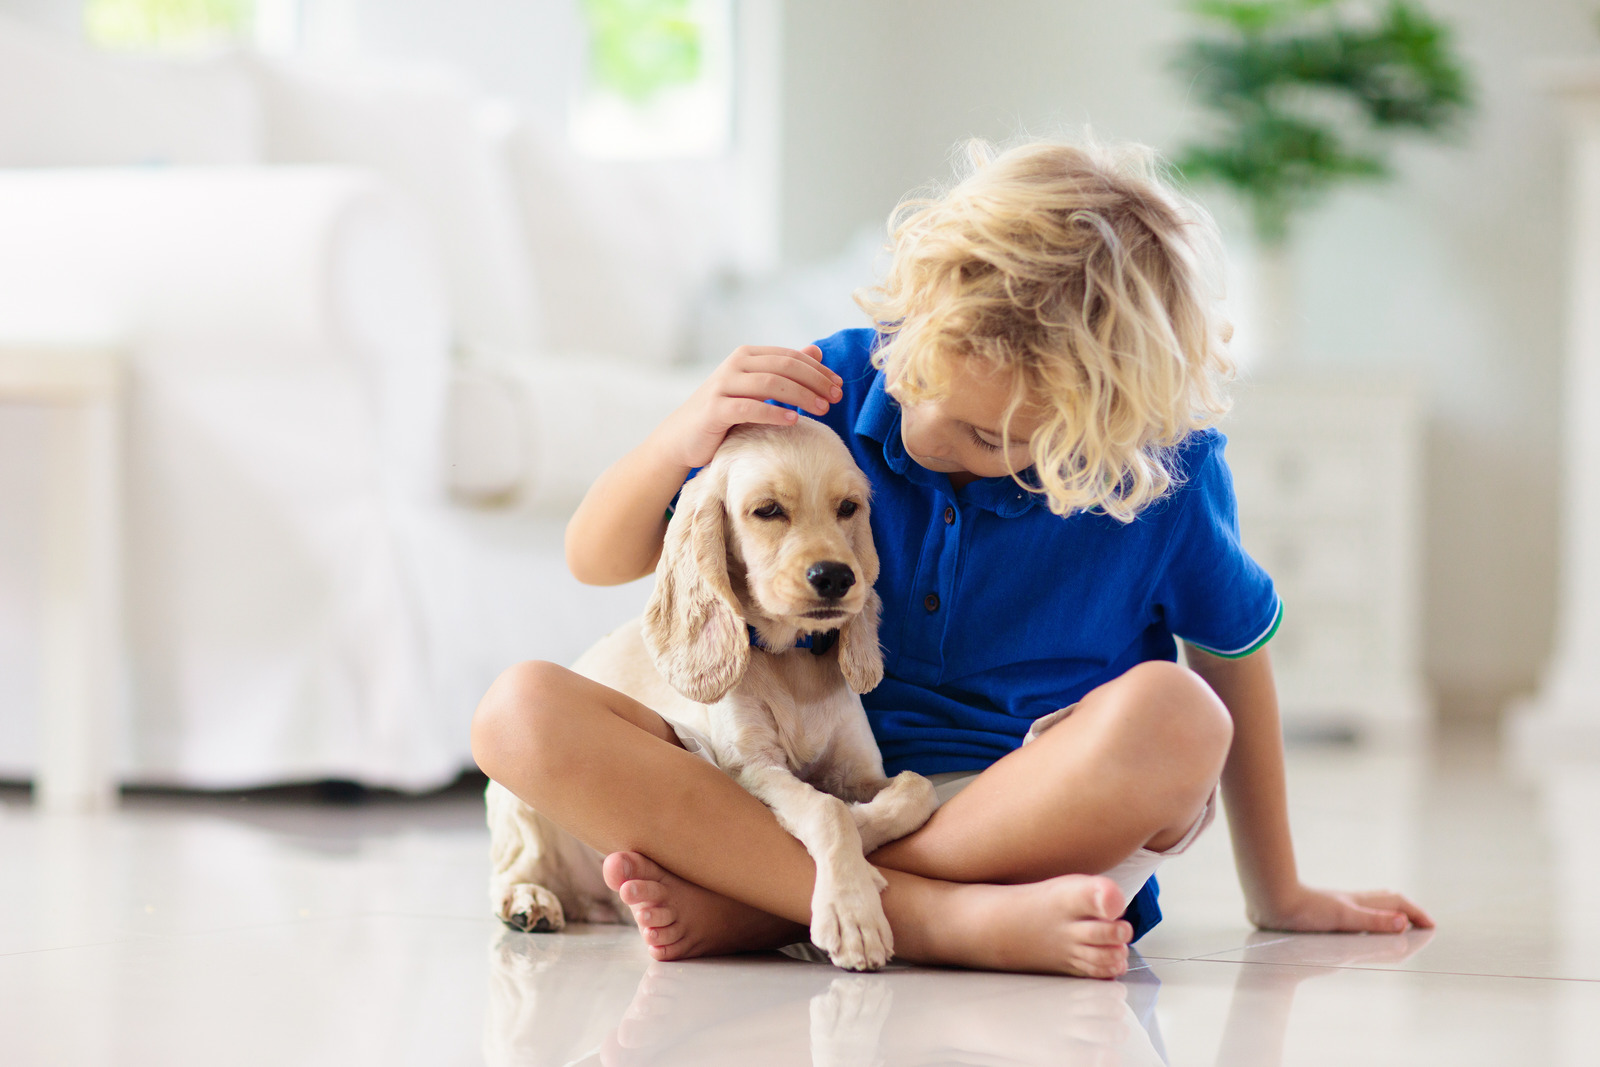 Creme kleur Engelse cockerspaniël hond zit op schoot van blond jongetje met blauwe polo op de grond